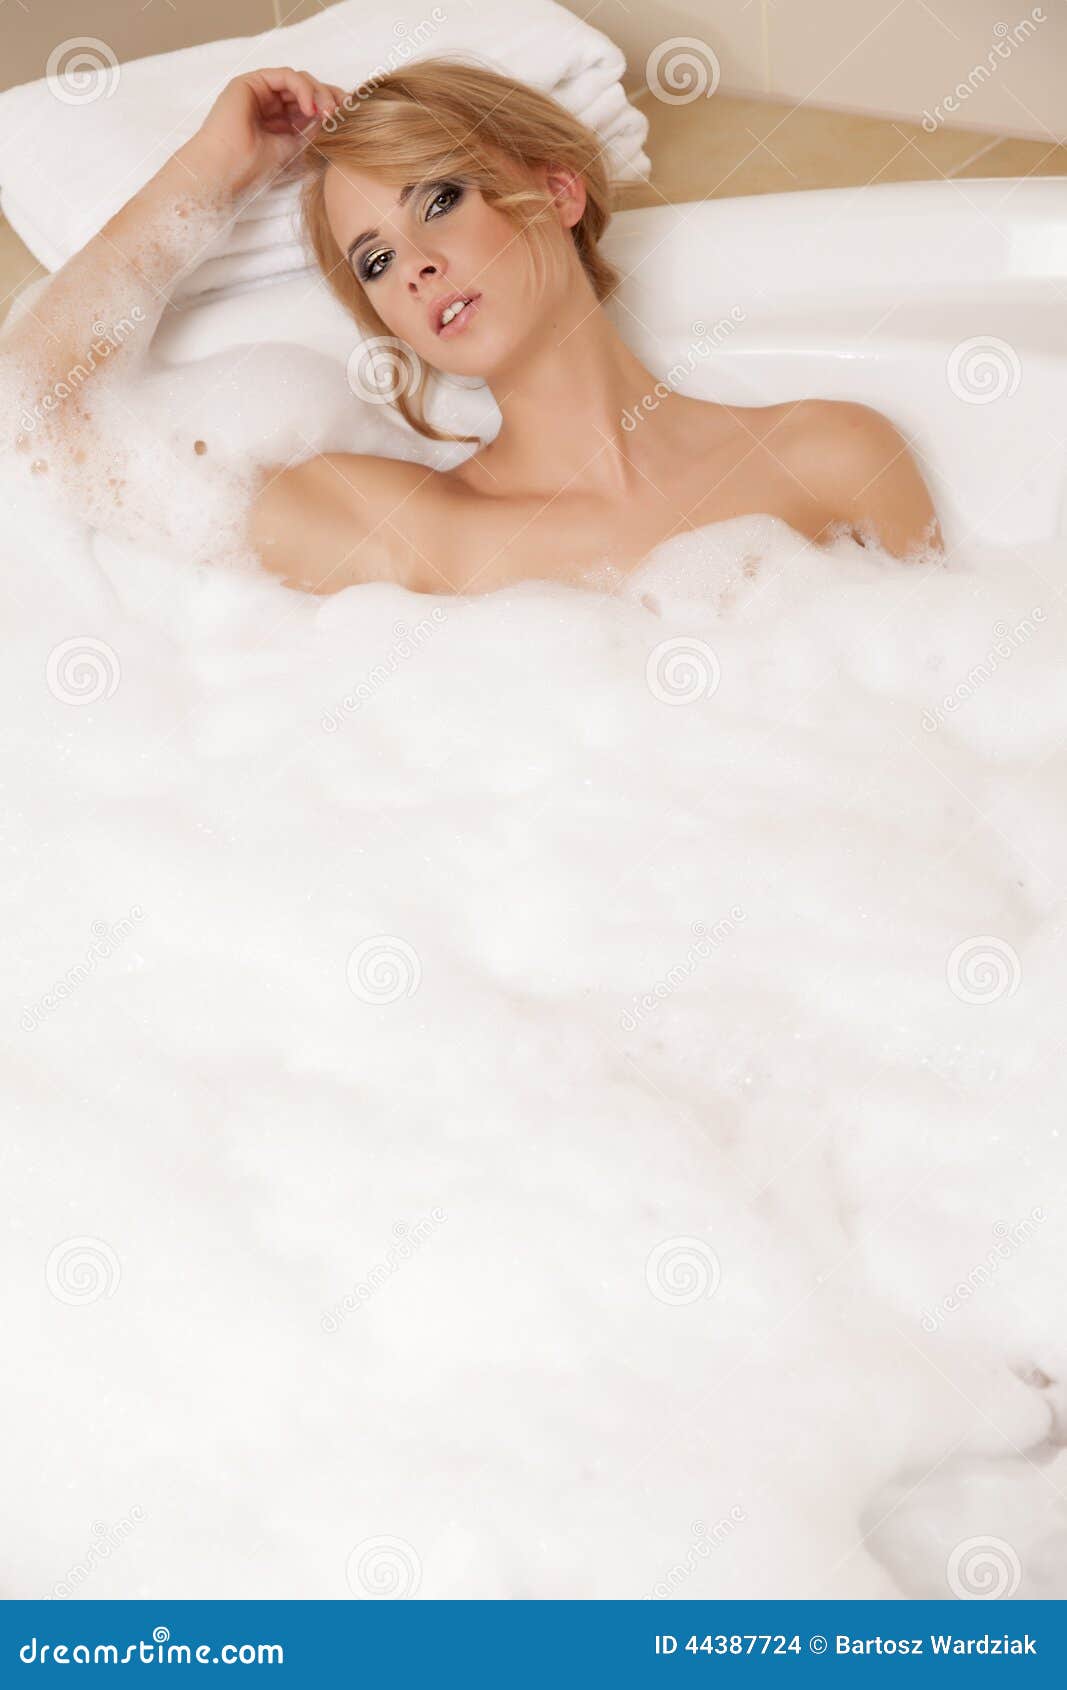 stockfoto frau im entspannenden bad nahaufnahme